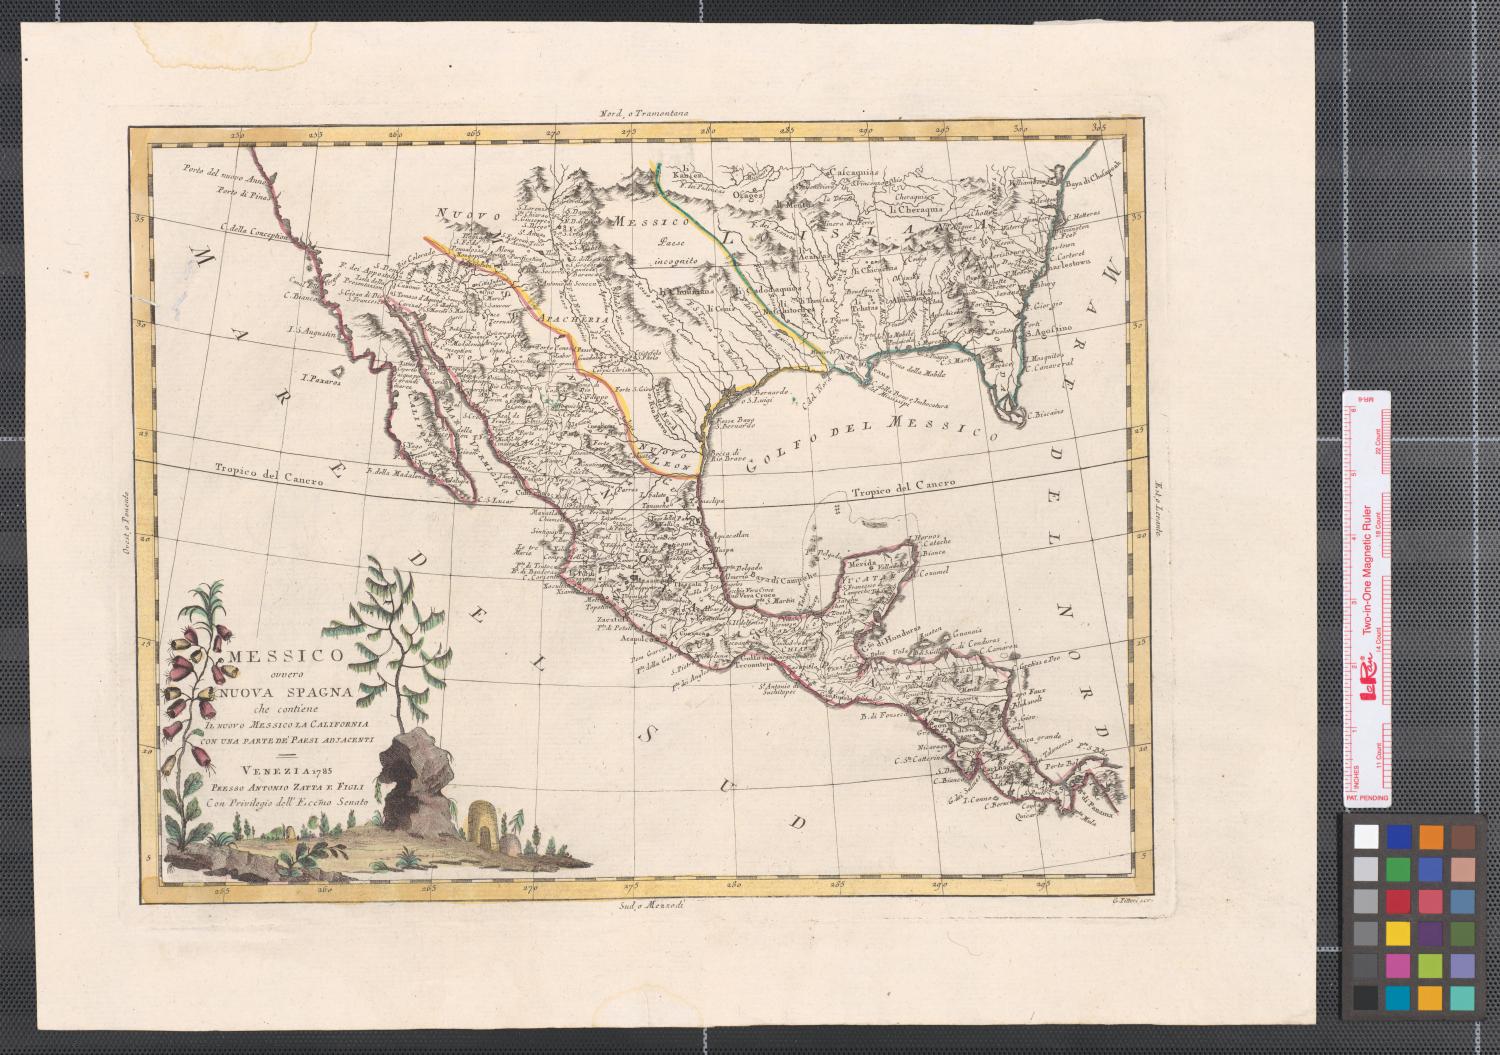 Messico, ouvero Nuova-Spagna : che contiene il Nuovo Messico, la California con una parte de' paesi adjacenti.
                                                
                                                    [Sequence #]: 1 of 2
                                                